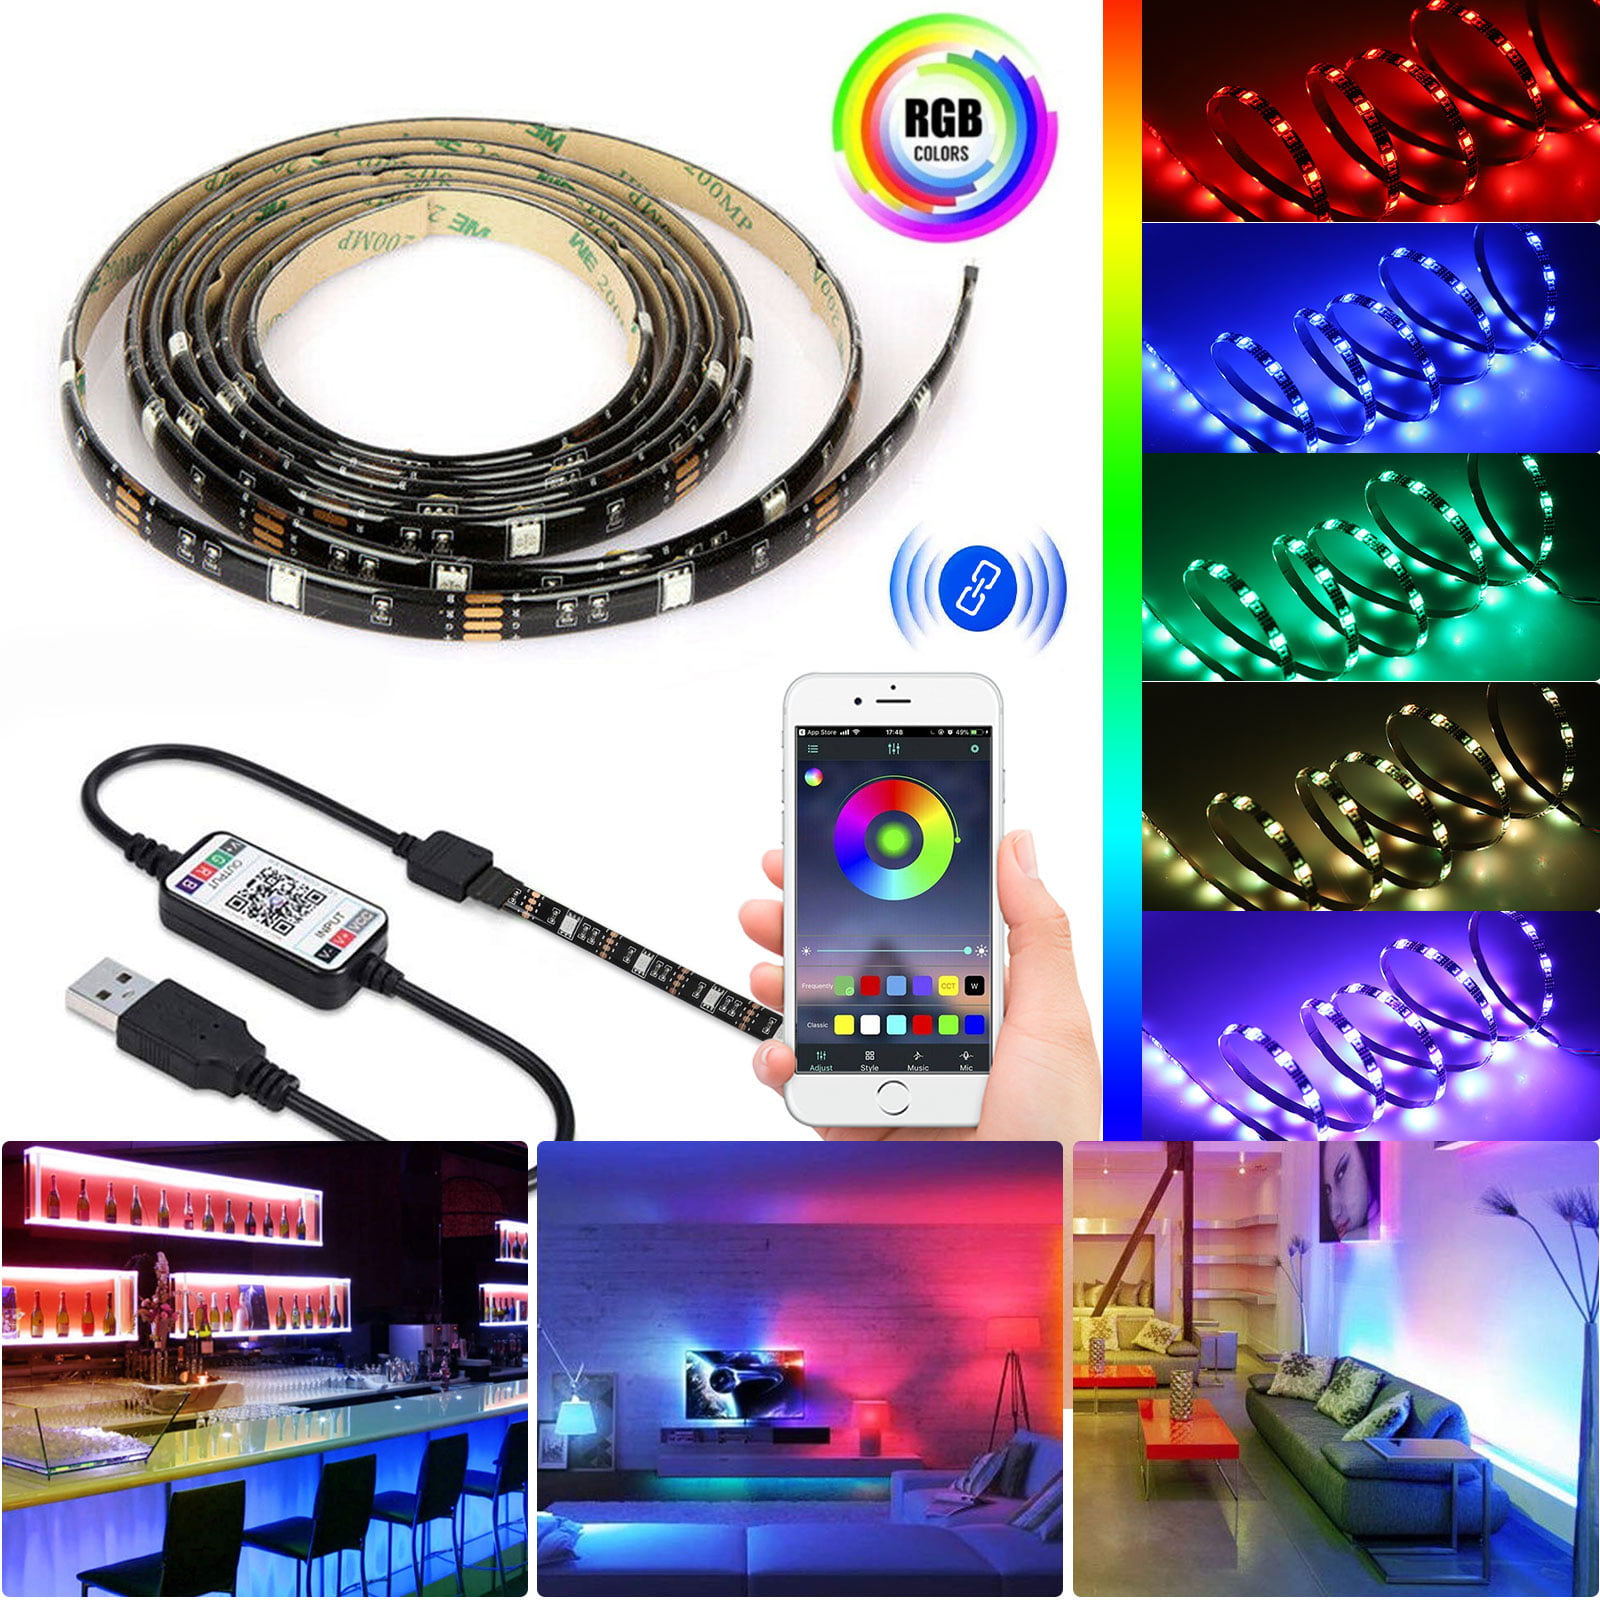 Music LED Strip Lights, 16.4ft 5050SMD 150LED Color Changing Lights